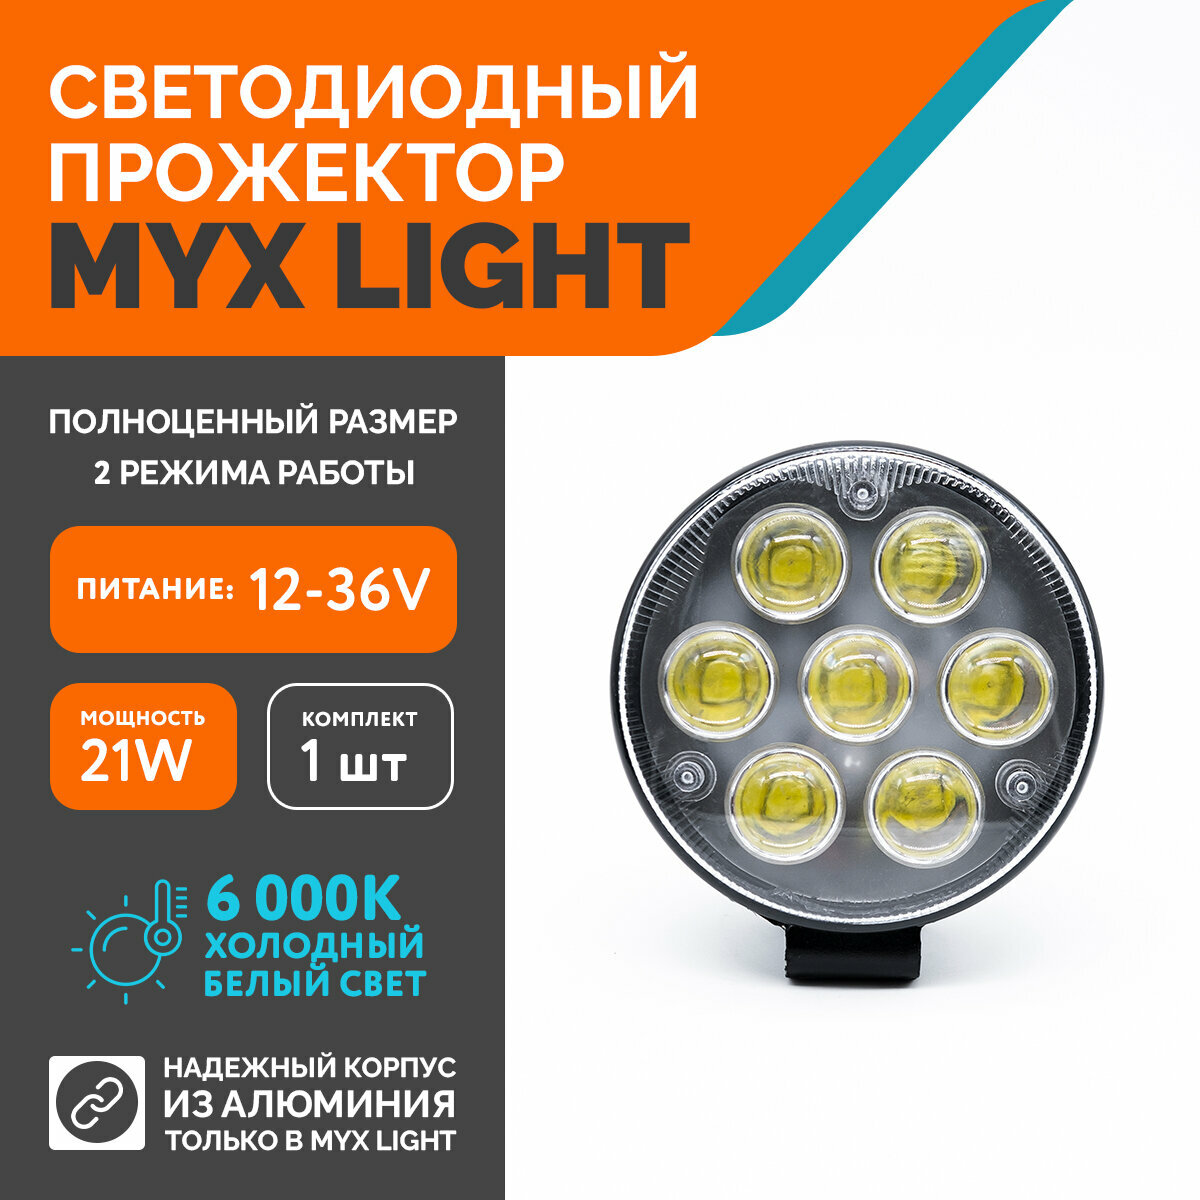 Светодиодная противотуманная фара для авто ФСО вспышка MYX-Light 12-36V мощность 21W 6000K прожектор дневные ходовые огни для легковых и грузовых авто джипов квадроциклов 1шт